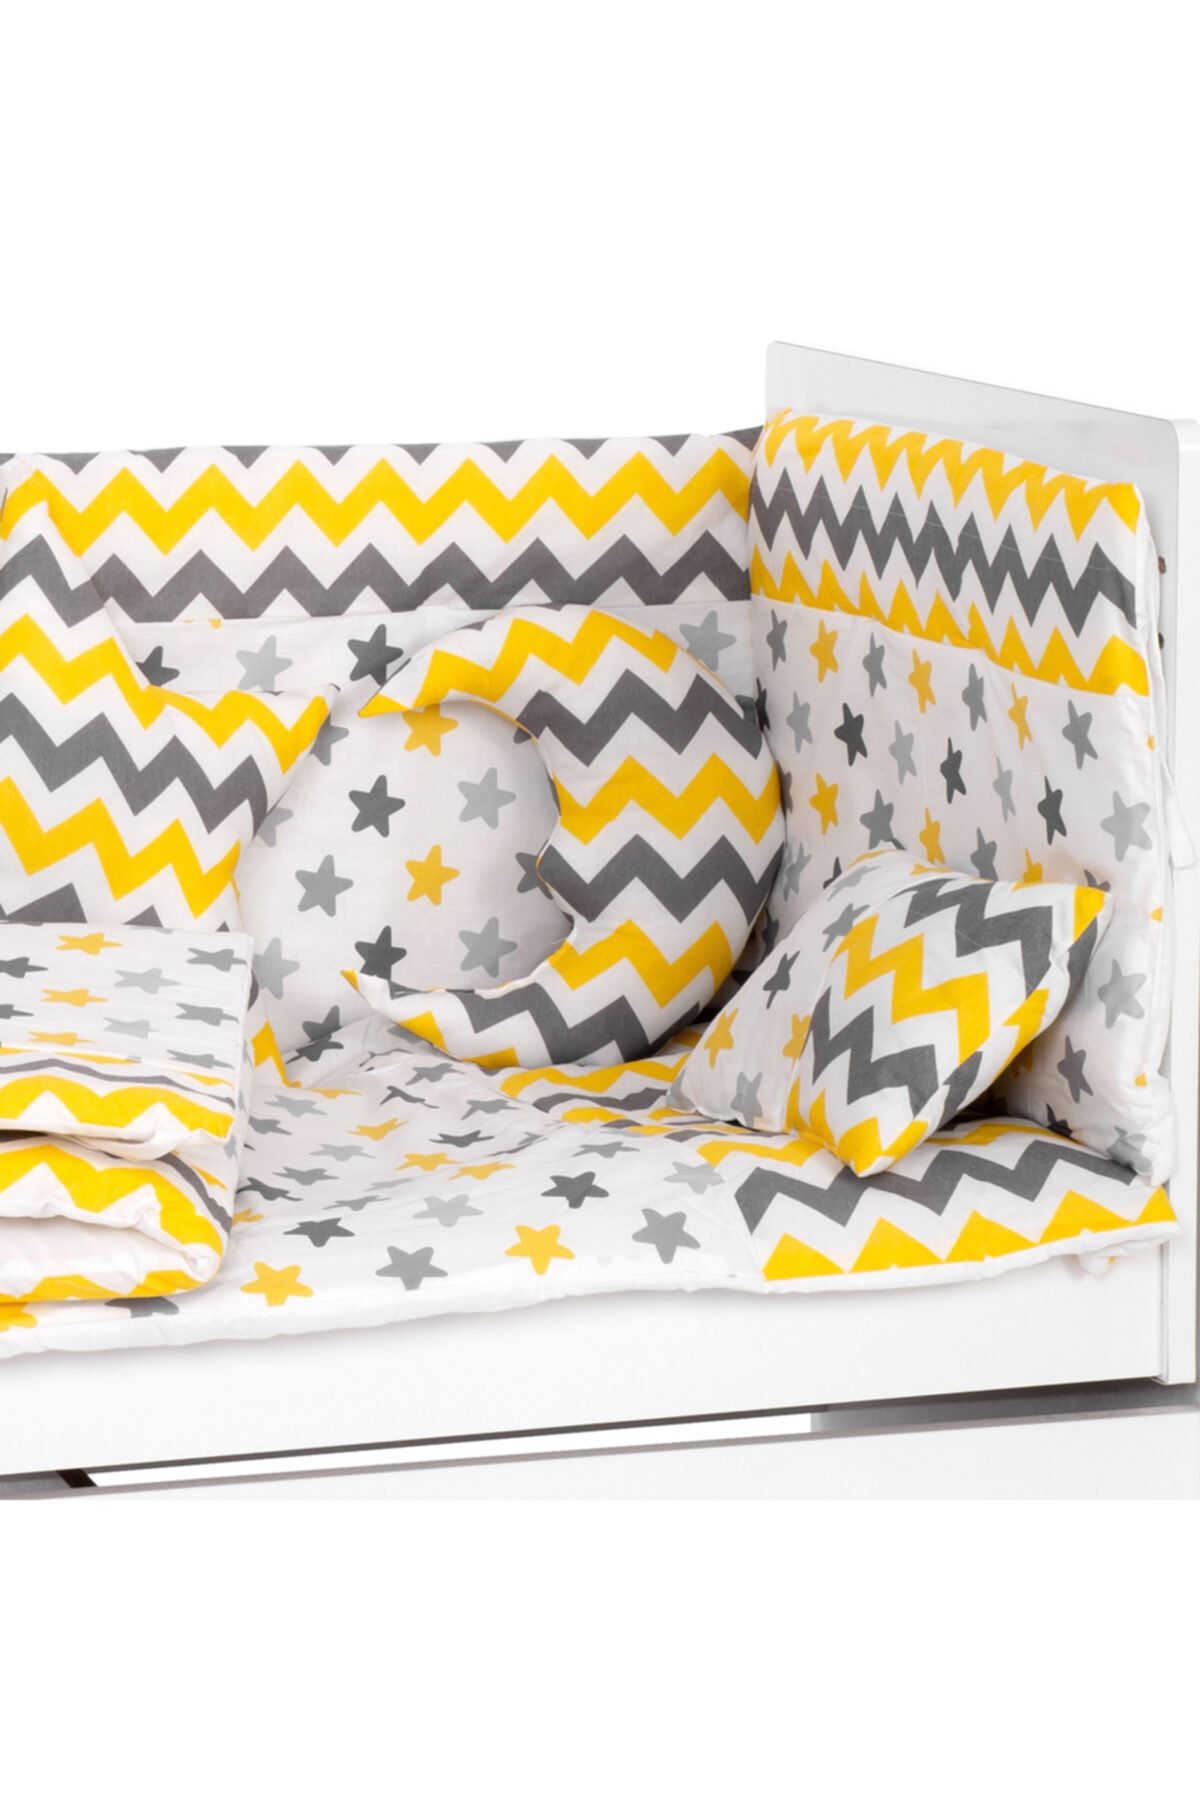 Sluupy Sluupy Sarı Gri Zigzag-sarı Yıldız Bebek Uyku Seti 70x130 7 Parça